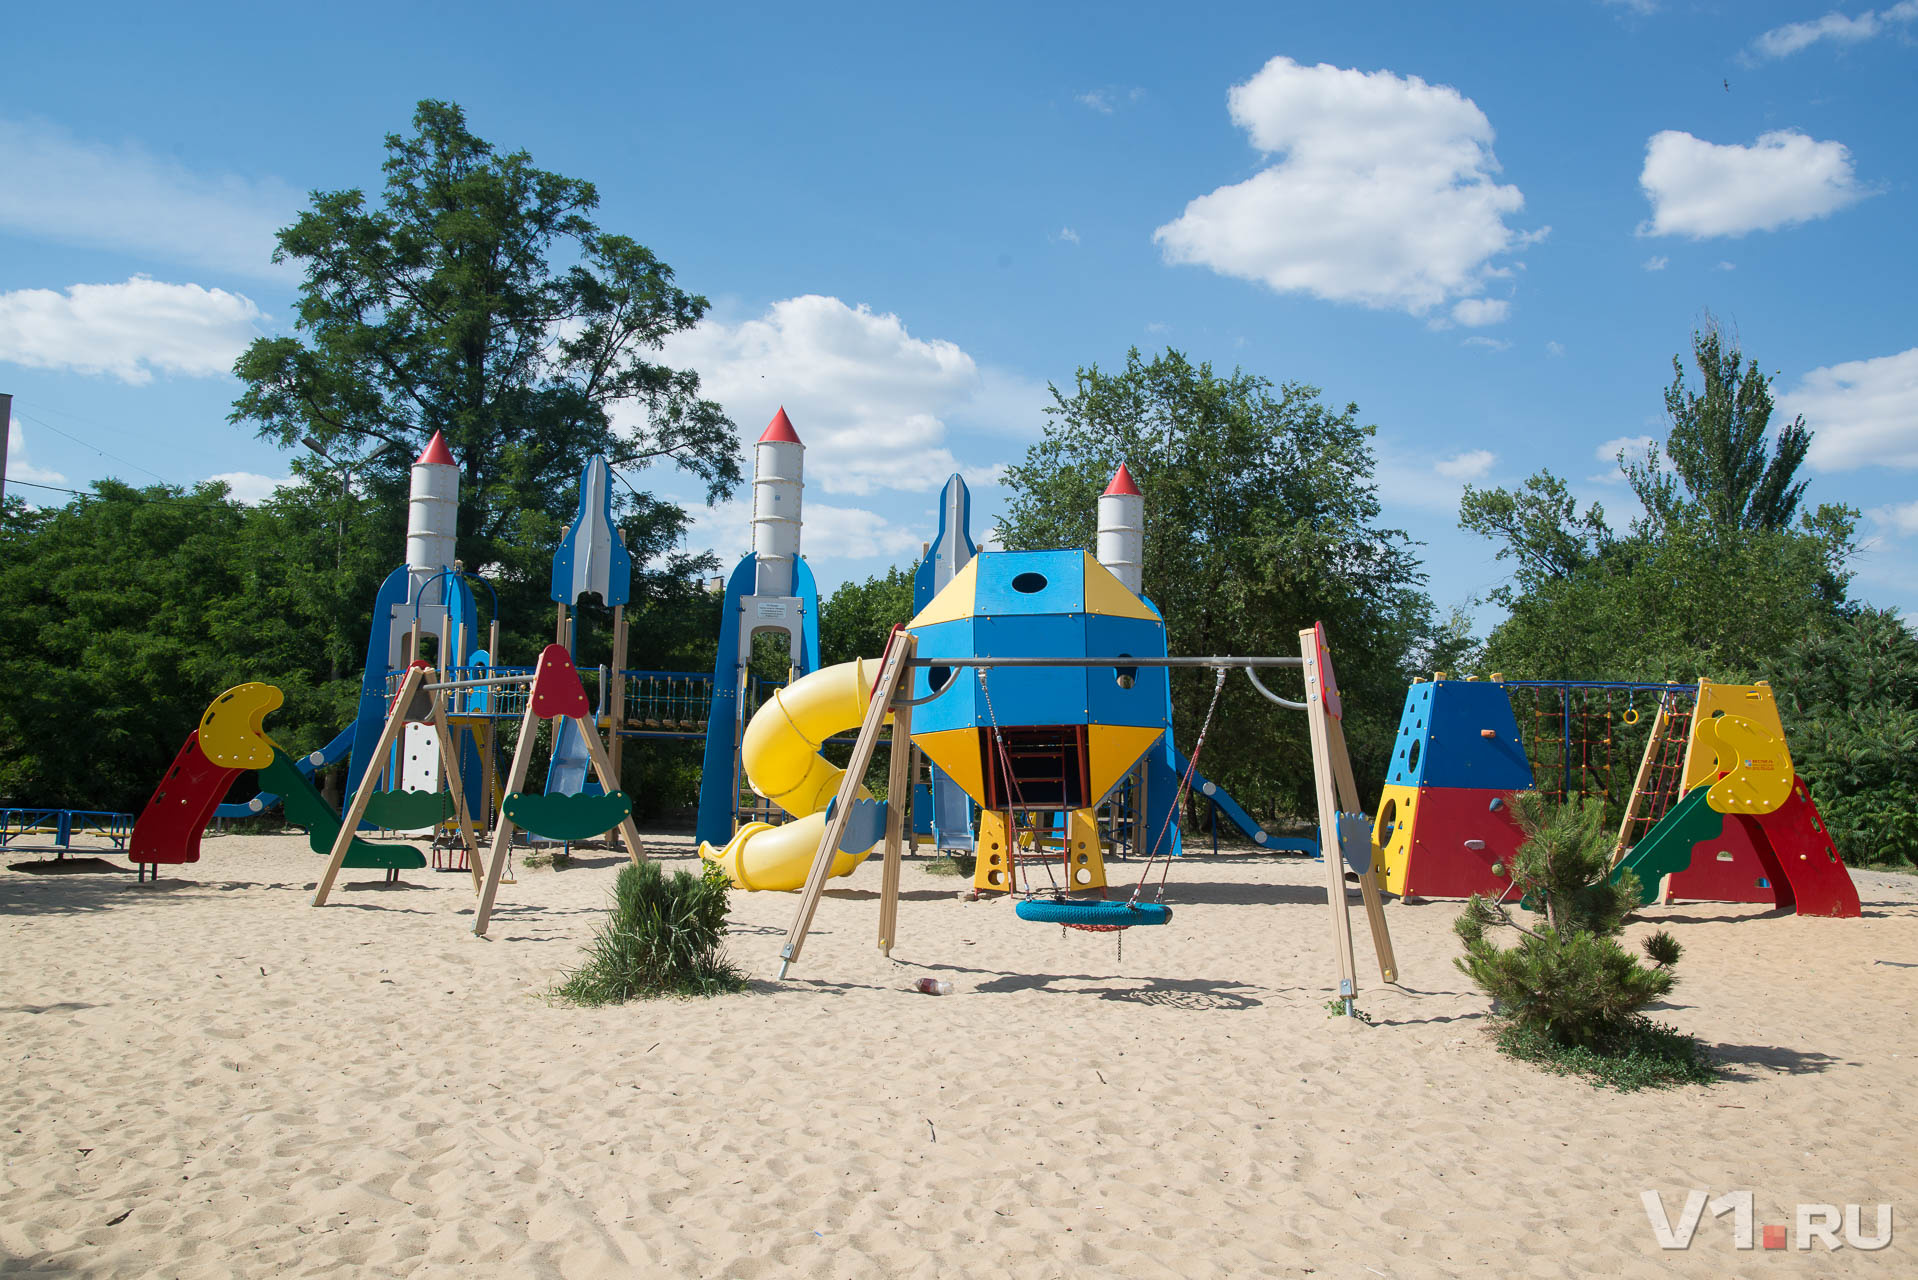 Космический детский городок появился в парке в 2015 году